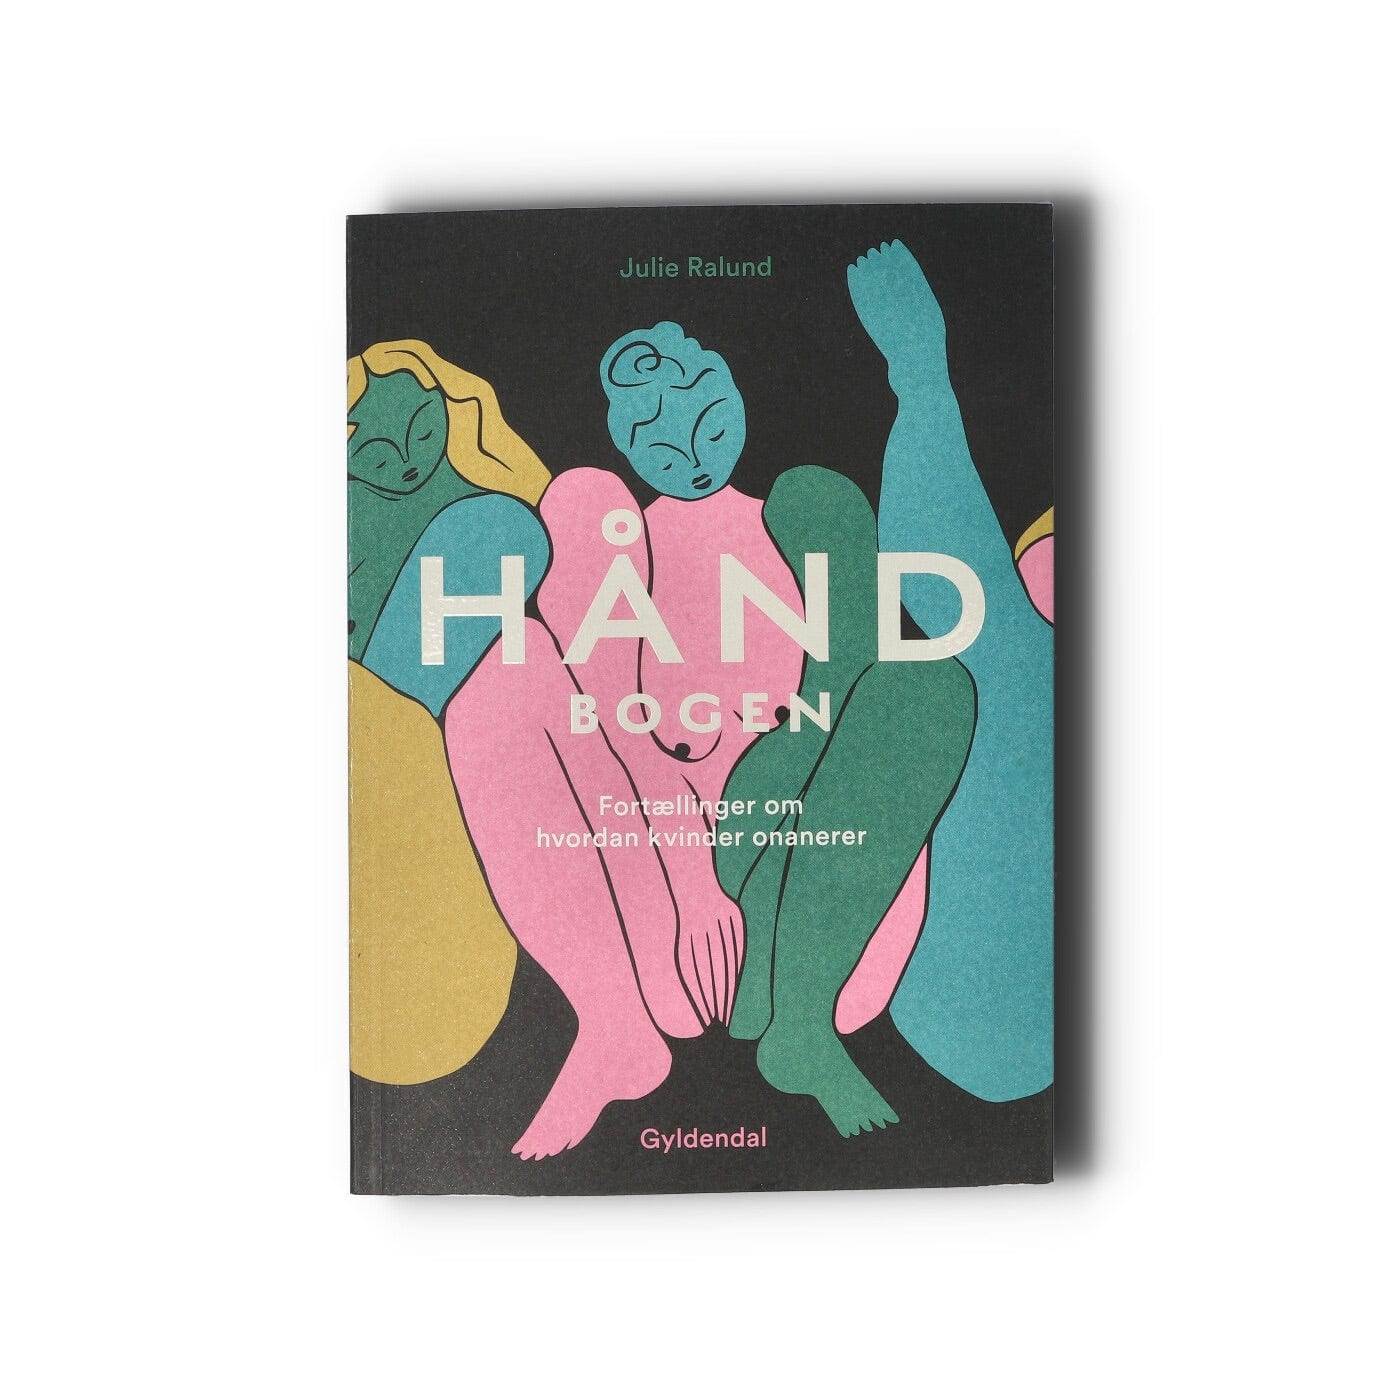 The Handbook by Julie Ralund PEECH Foto